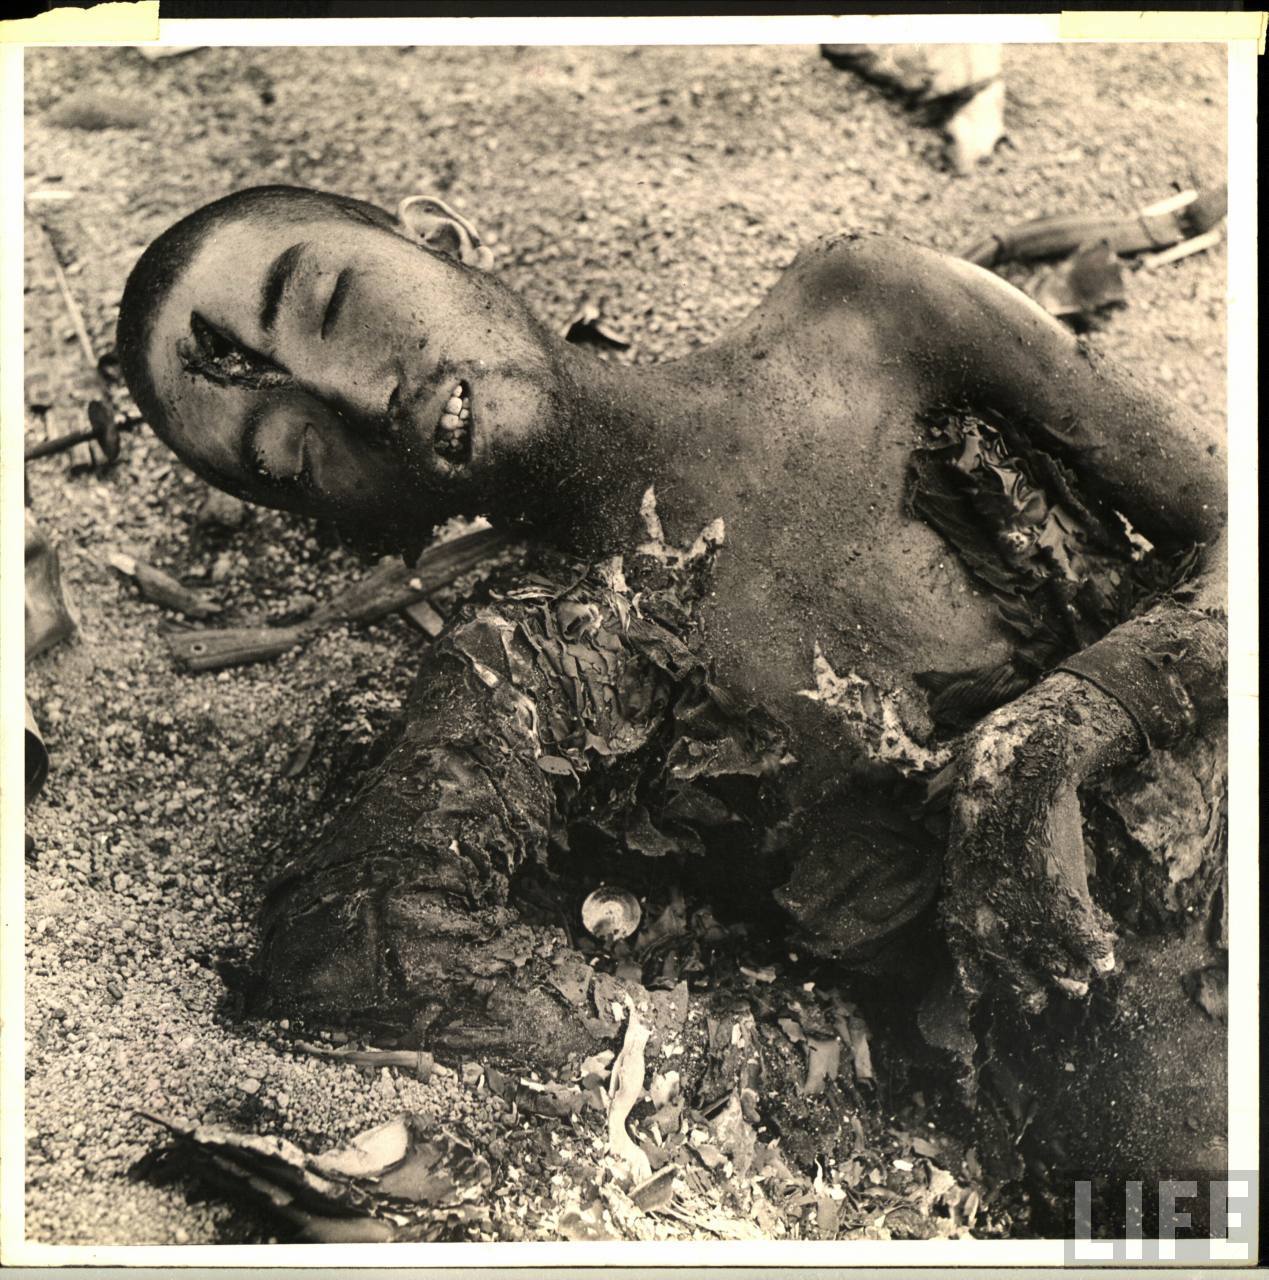 硫磺岛岸边日军尸体 1945年